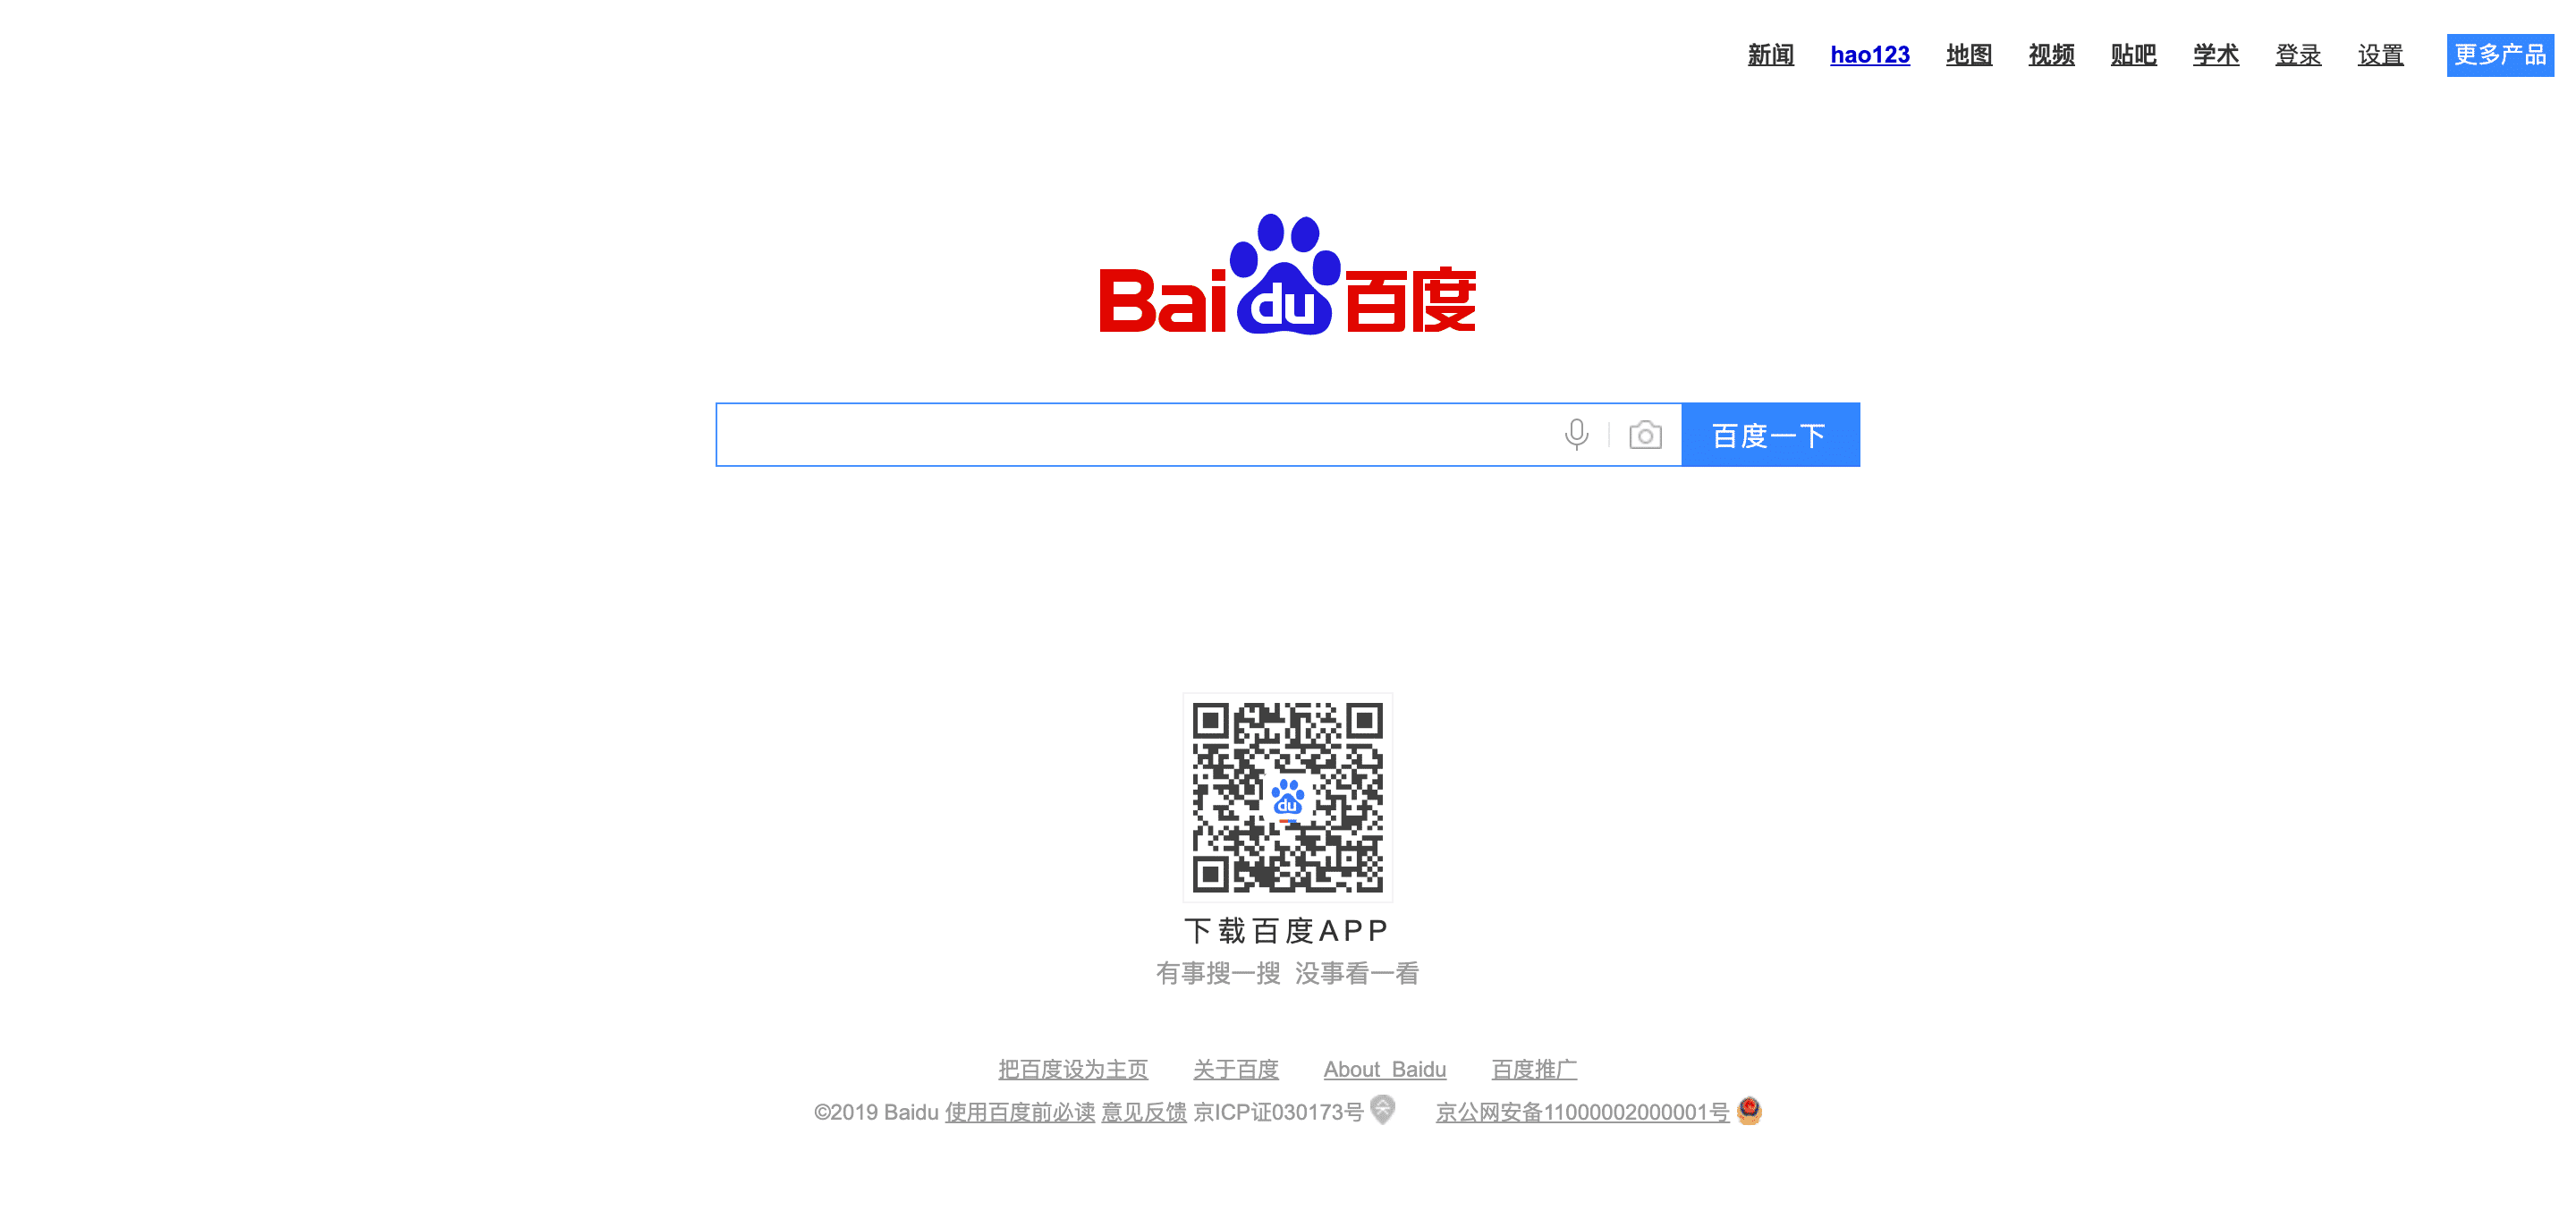 Moteurs de recherche alternatifs : Baidu